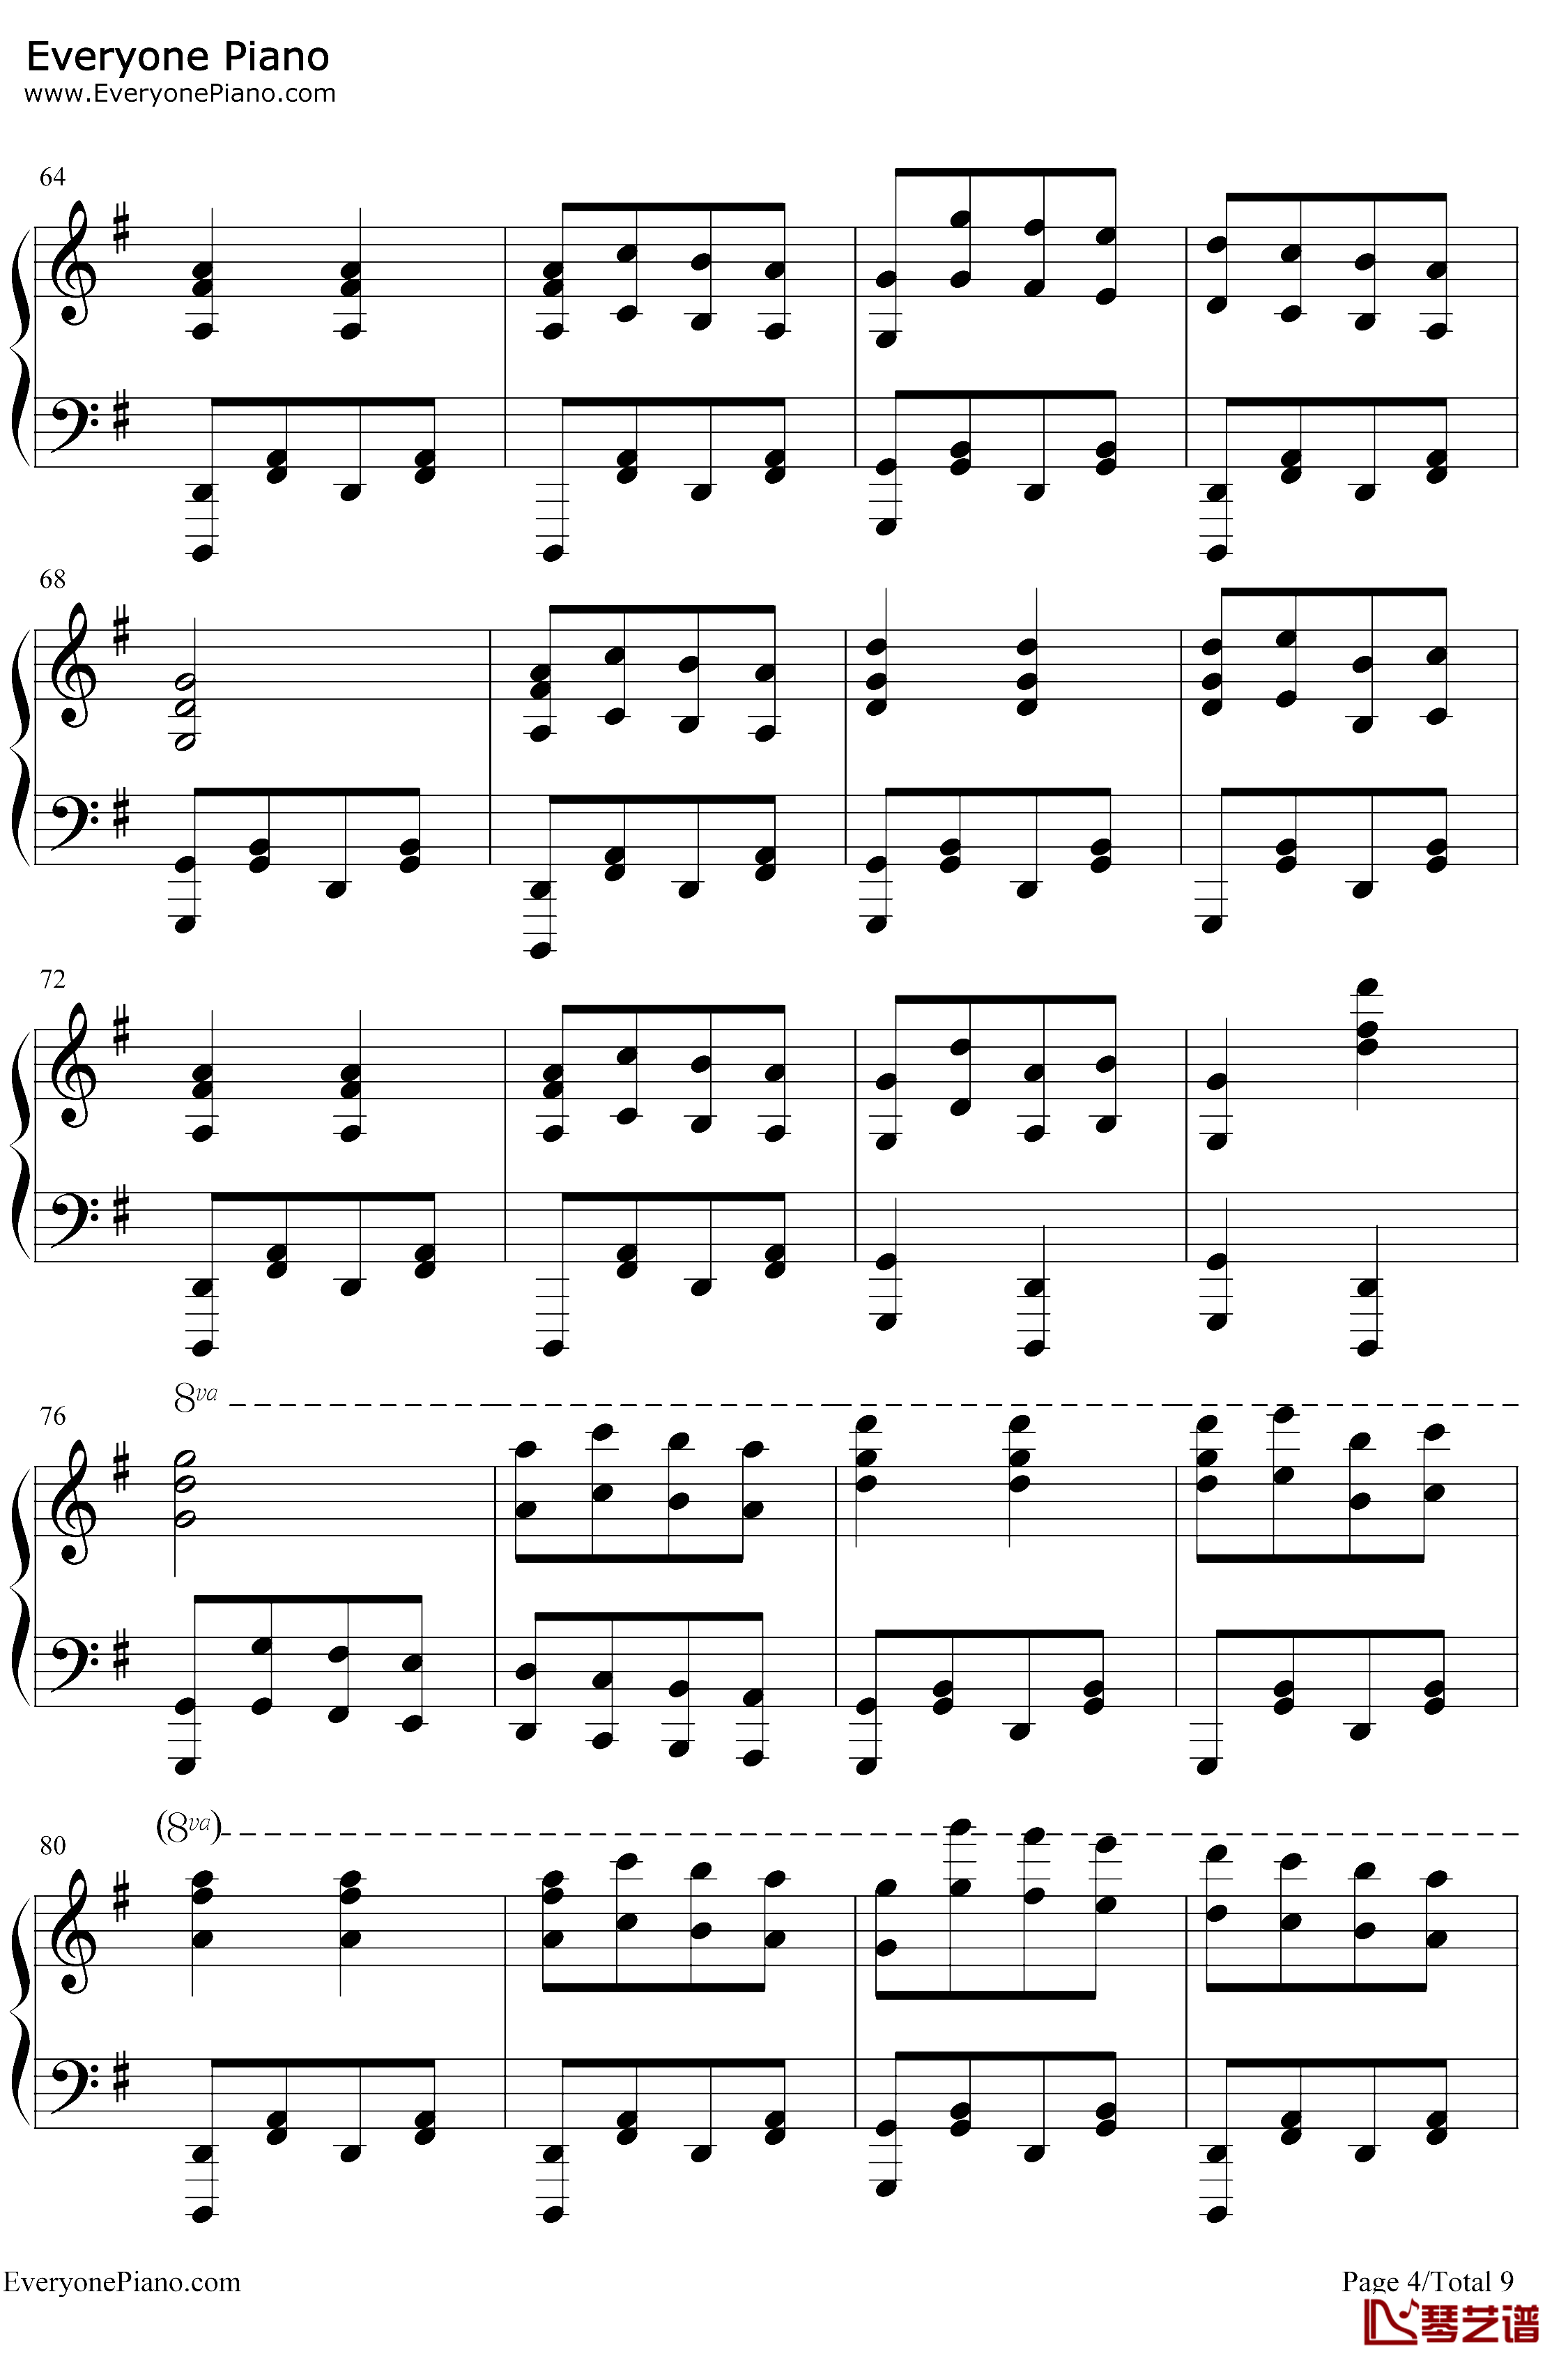 康康舞曲钢琴谱-雅克·奥芬巴赫-触手猴版-天堂与地狱序曲-地狱中的奥菲欧序曲4